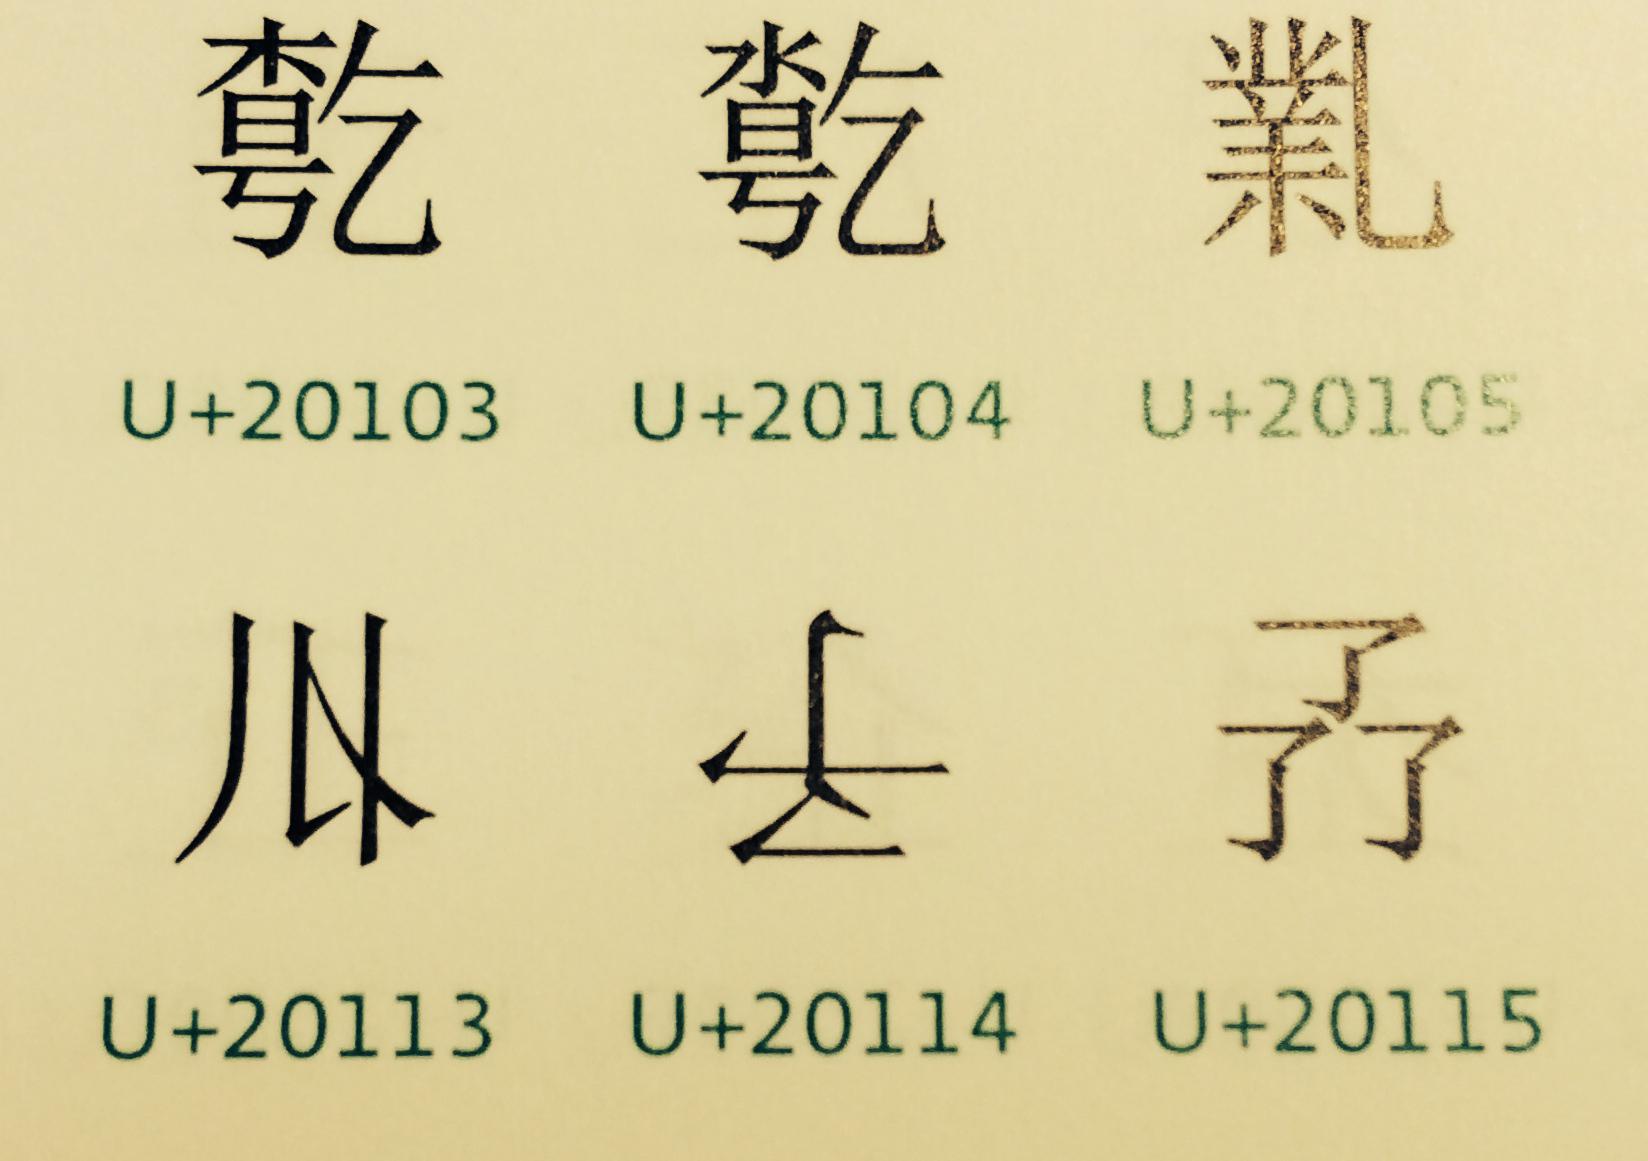 含羞草 珍漢字 𠄔 U 114 は 幻 の本字だそうです よって意味も まぼろし 柳瀬 尚紀があの フィネガンズ ウェイク の訳でも使った漢字だそうです みなさま 情報ありがとうございます 世界の文字と記号の大図鑑 研究社 より